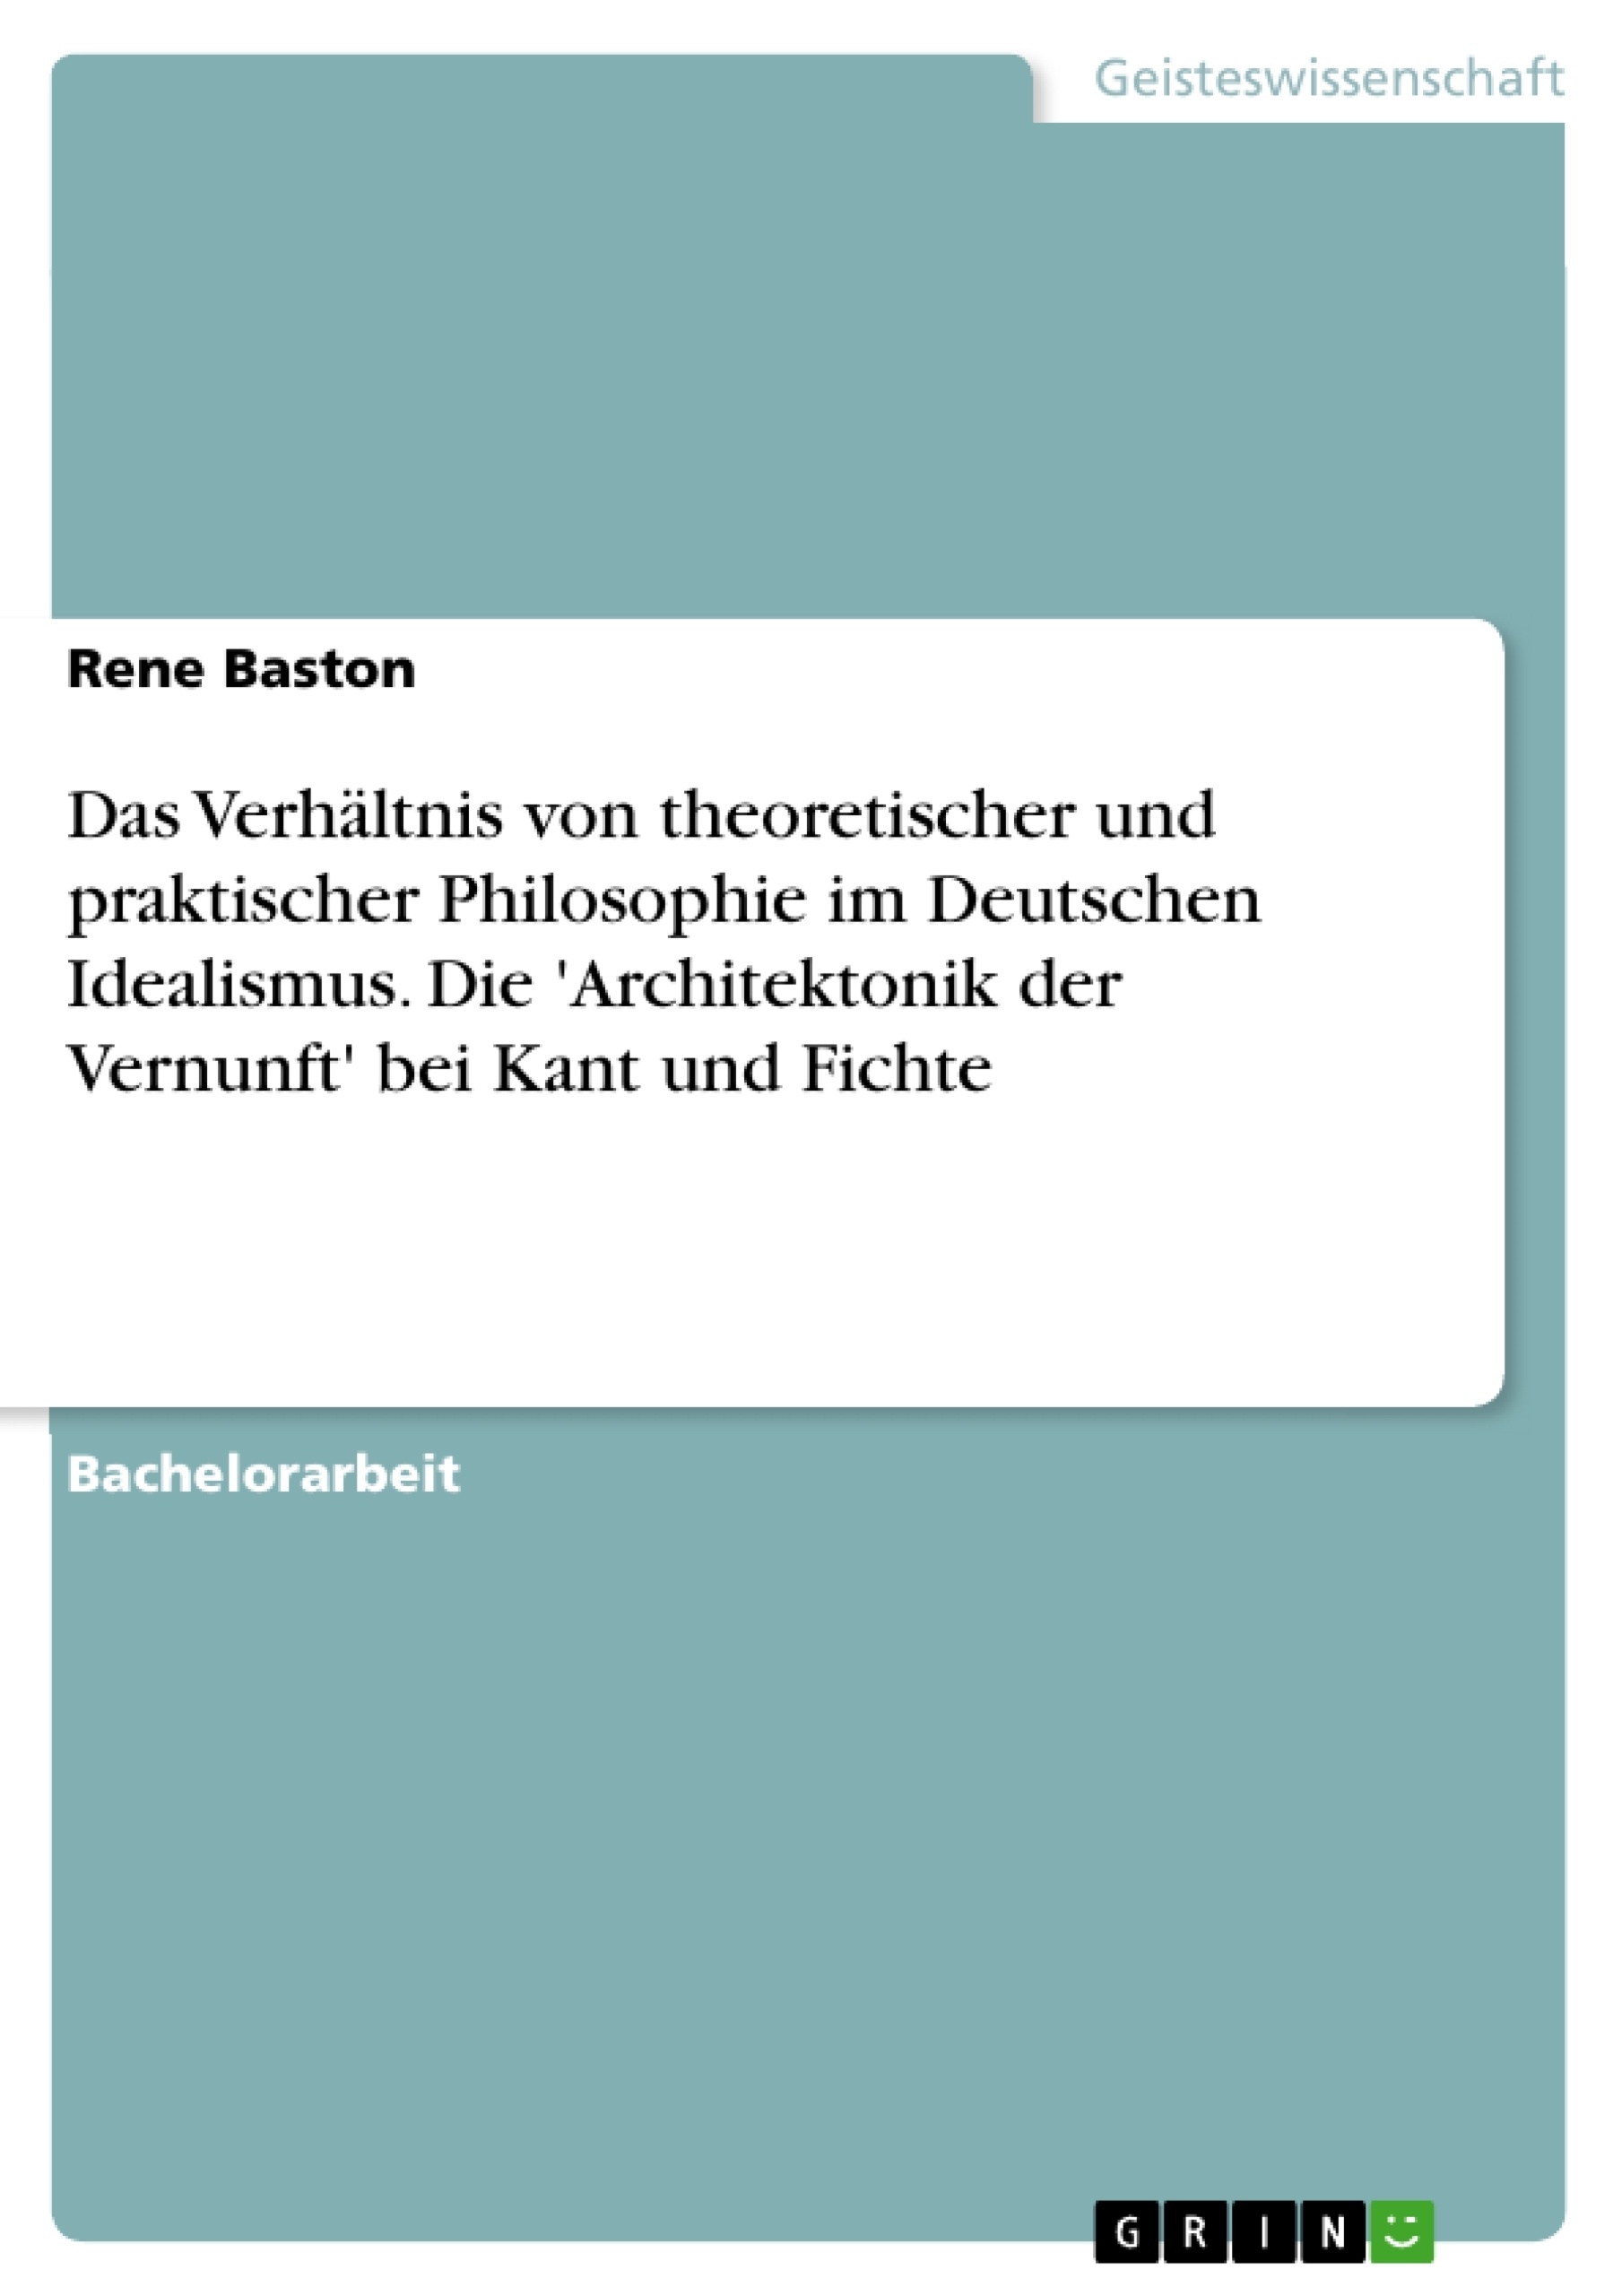 Title: Das Verhältnis von theoretischer und praktischer Philosophie im Deutschen Idealismus. Die 'Architektonik der Vernunft' bei Kant und Fichte